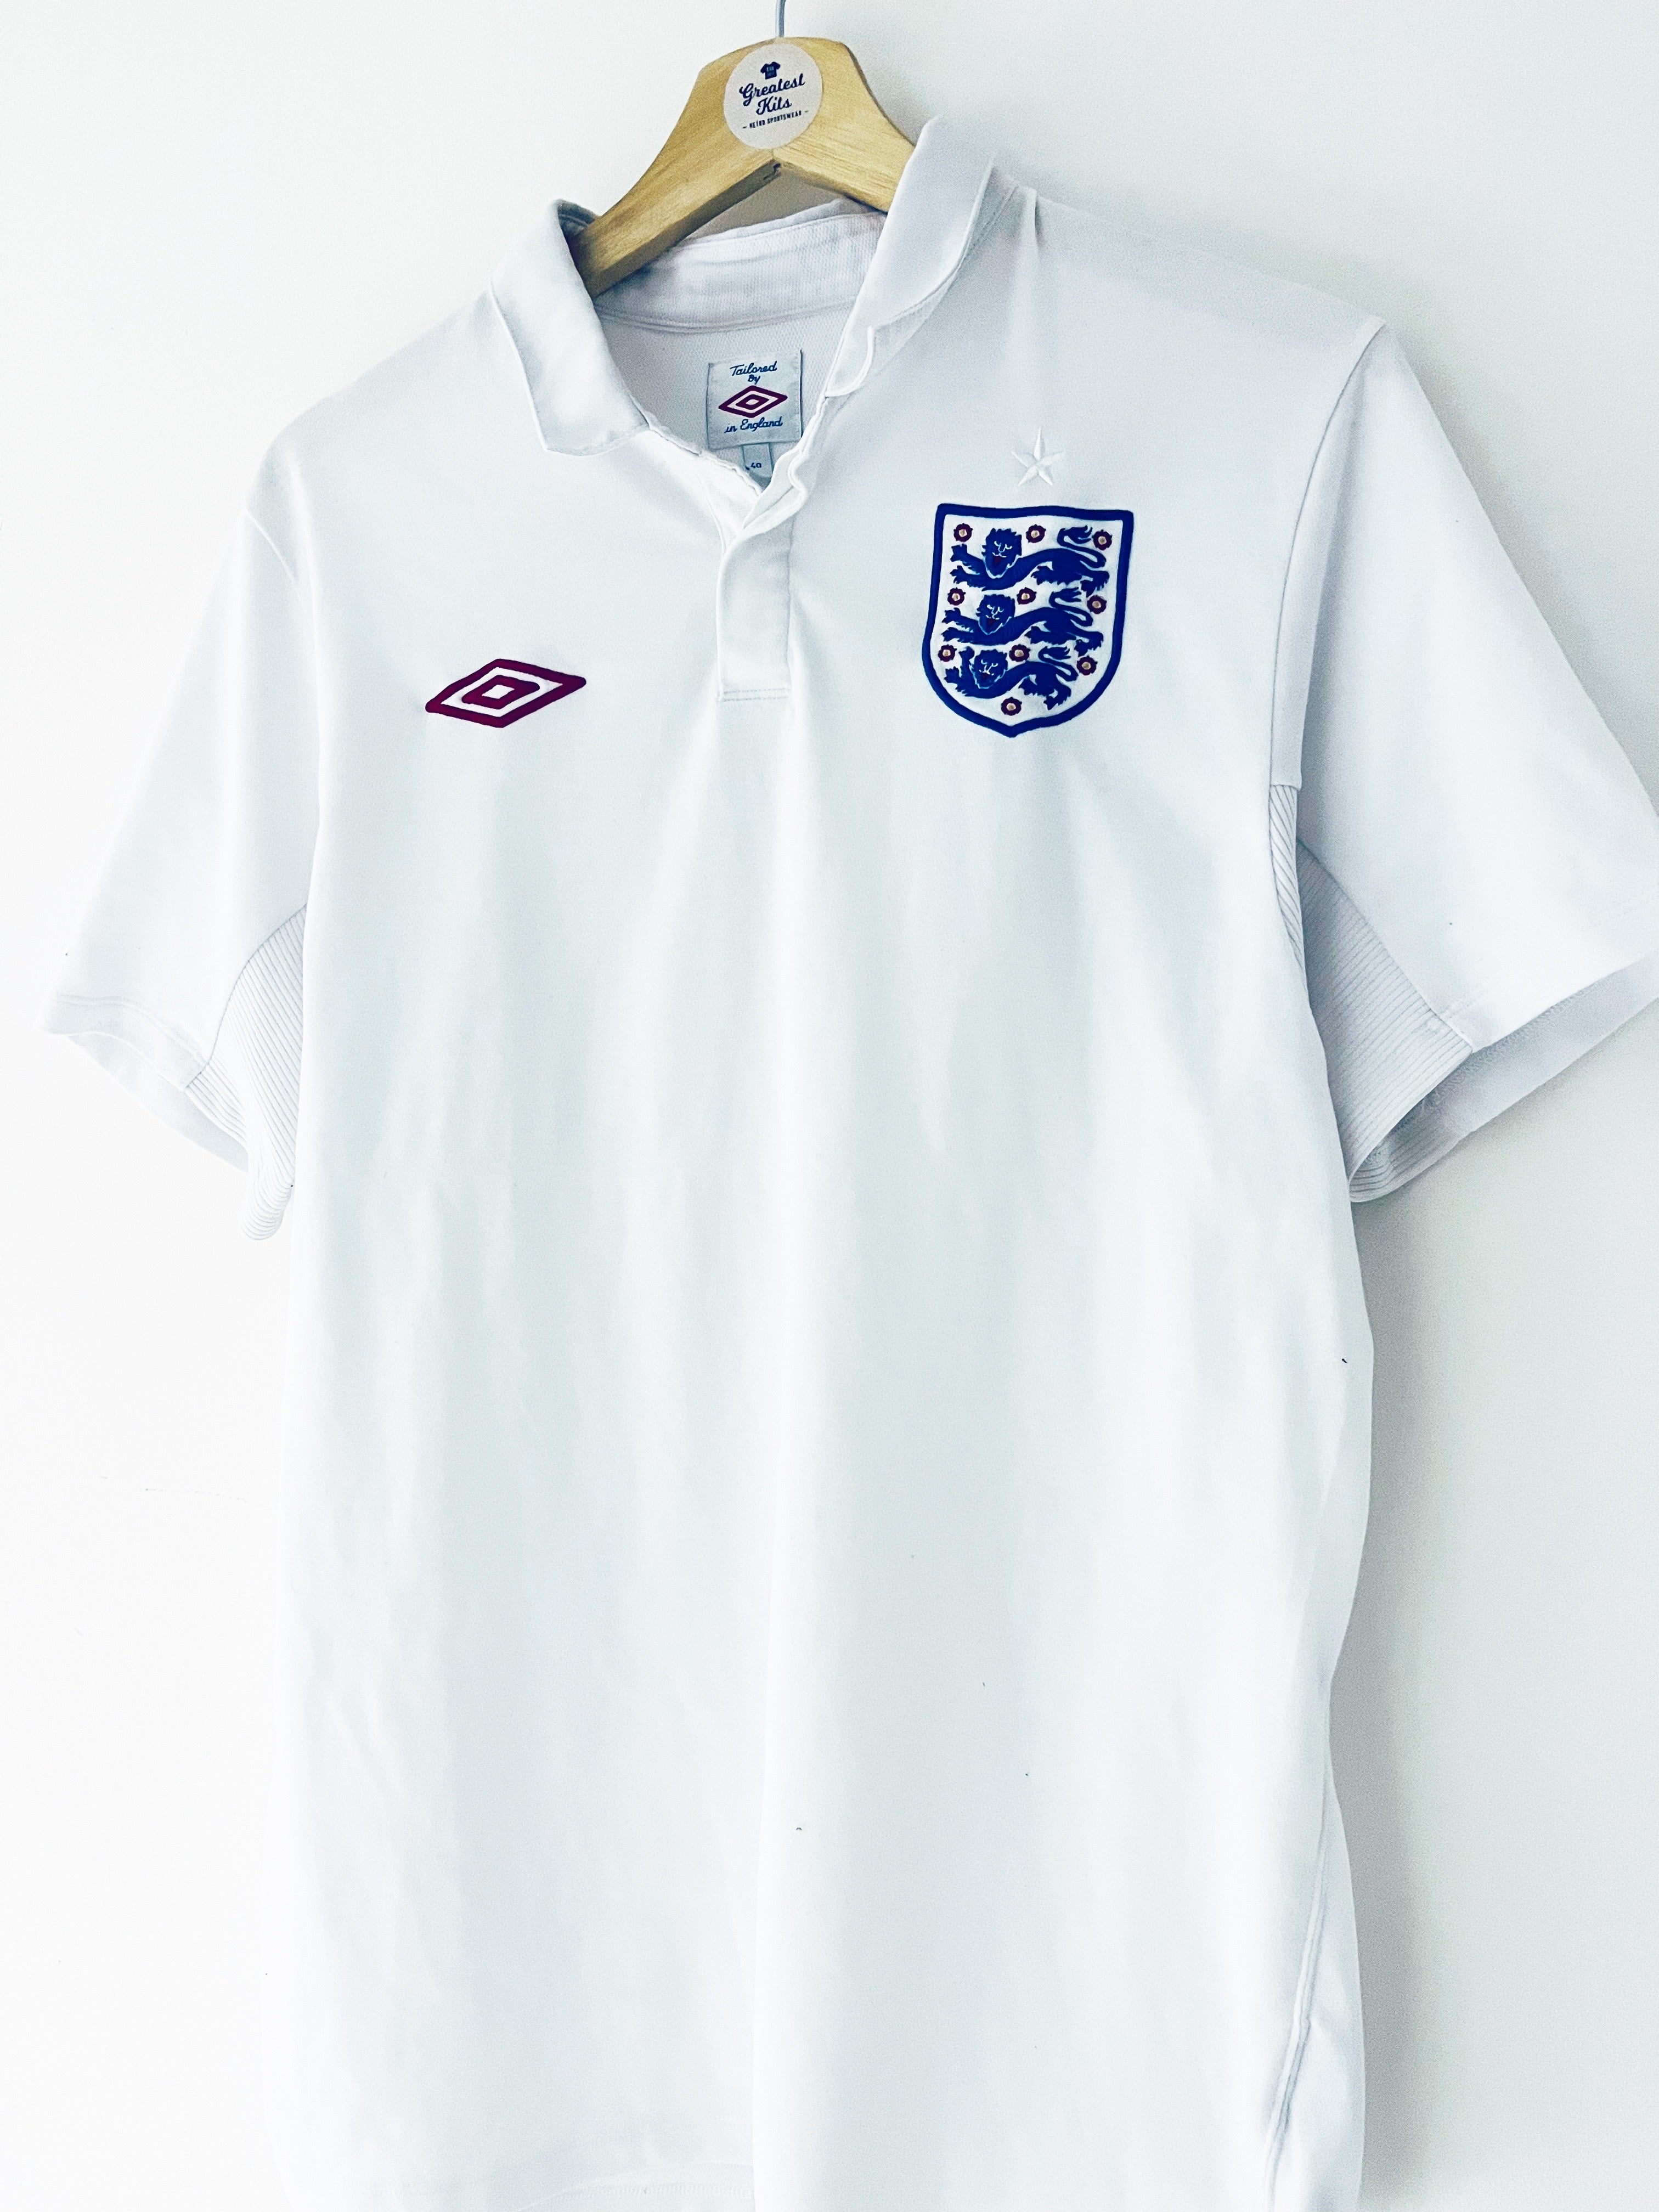 2010/11 England Home Shirt (L) 9/10